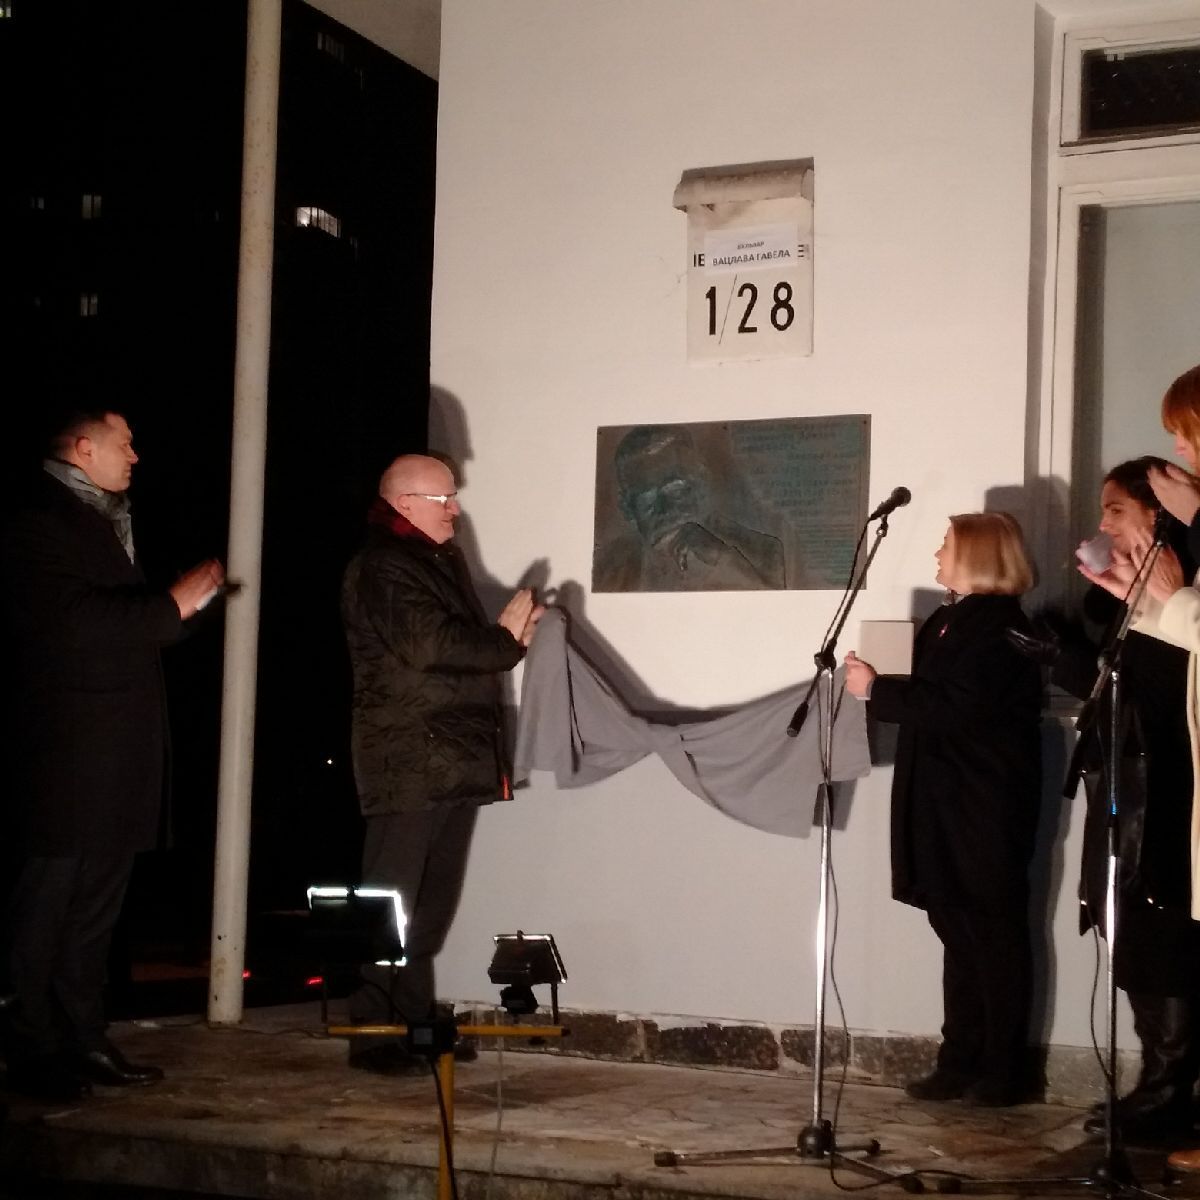 Ministr kultury Daniel Herman odhaluje pamětní desku Václava Havla v Kyjevě.